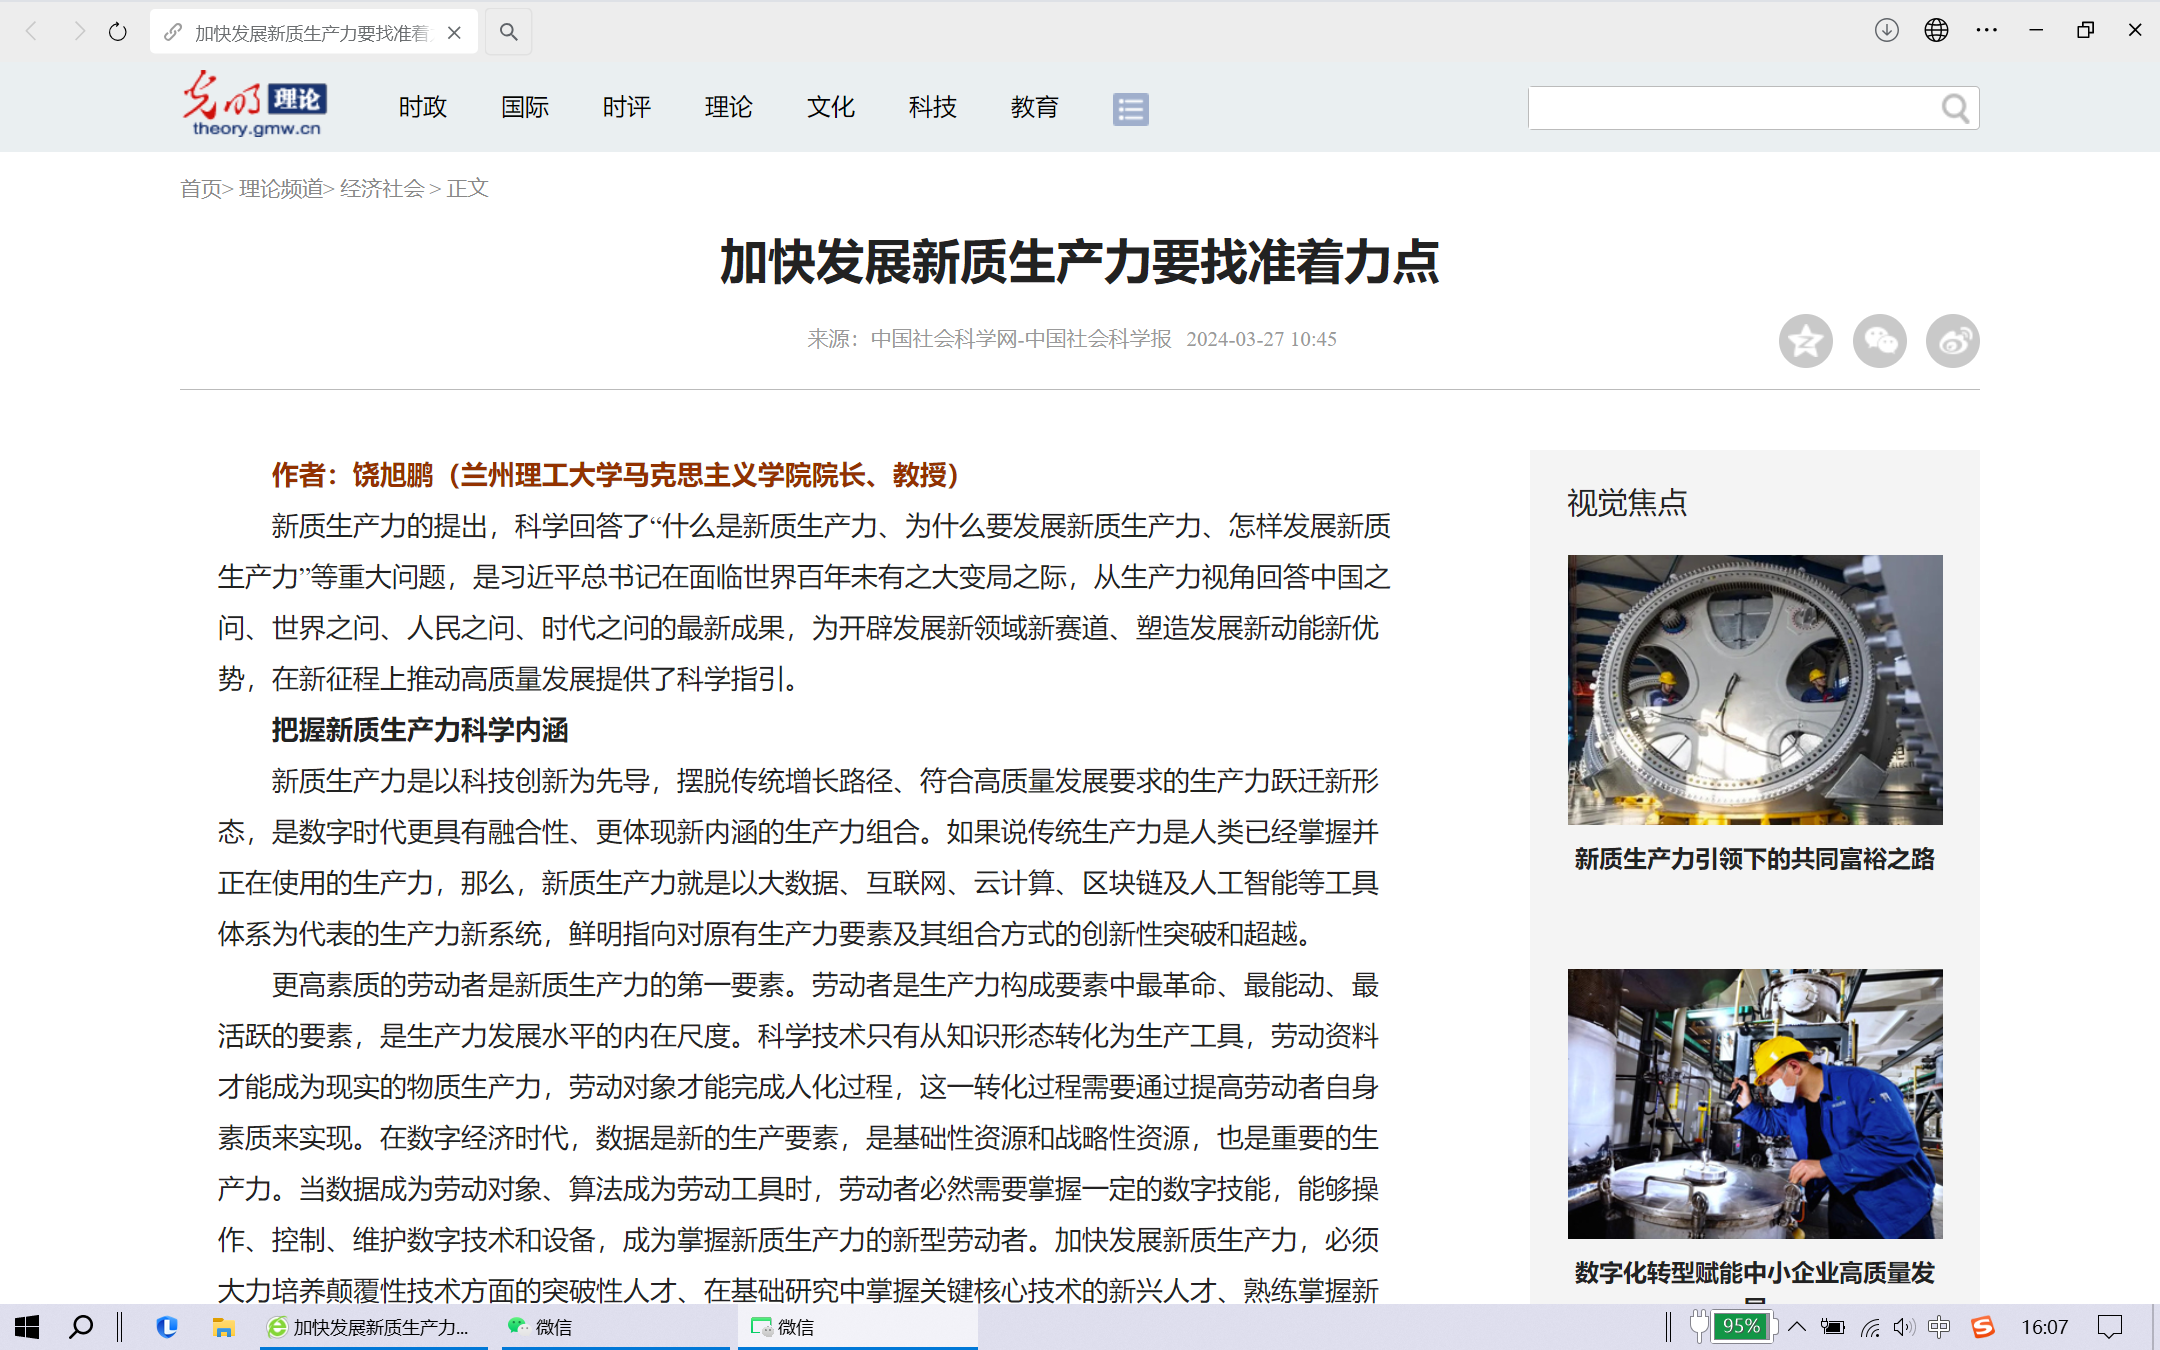 公司饶旭鹏教授《加快发展新质生产力要找准着力点》一文在中国社会科学报刊发，并被光明网转载